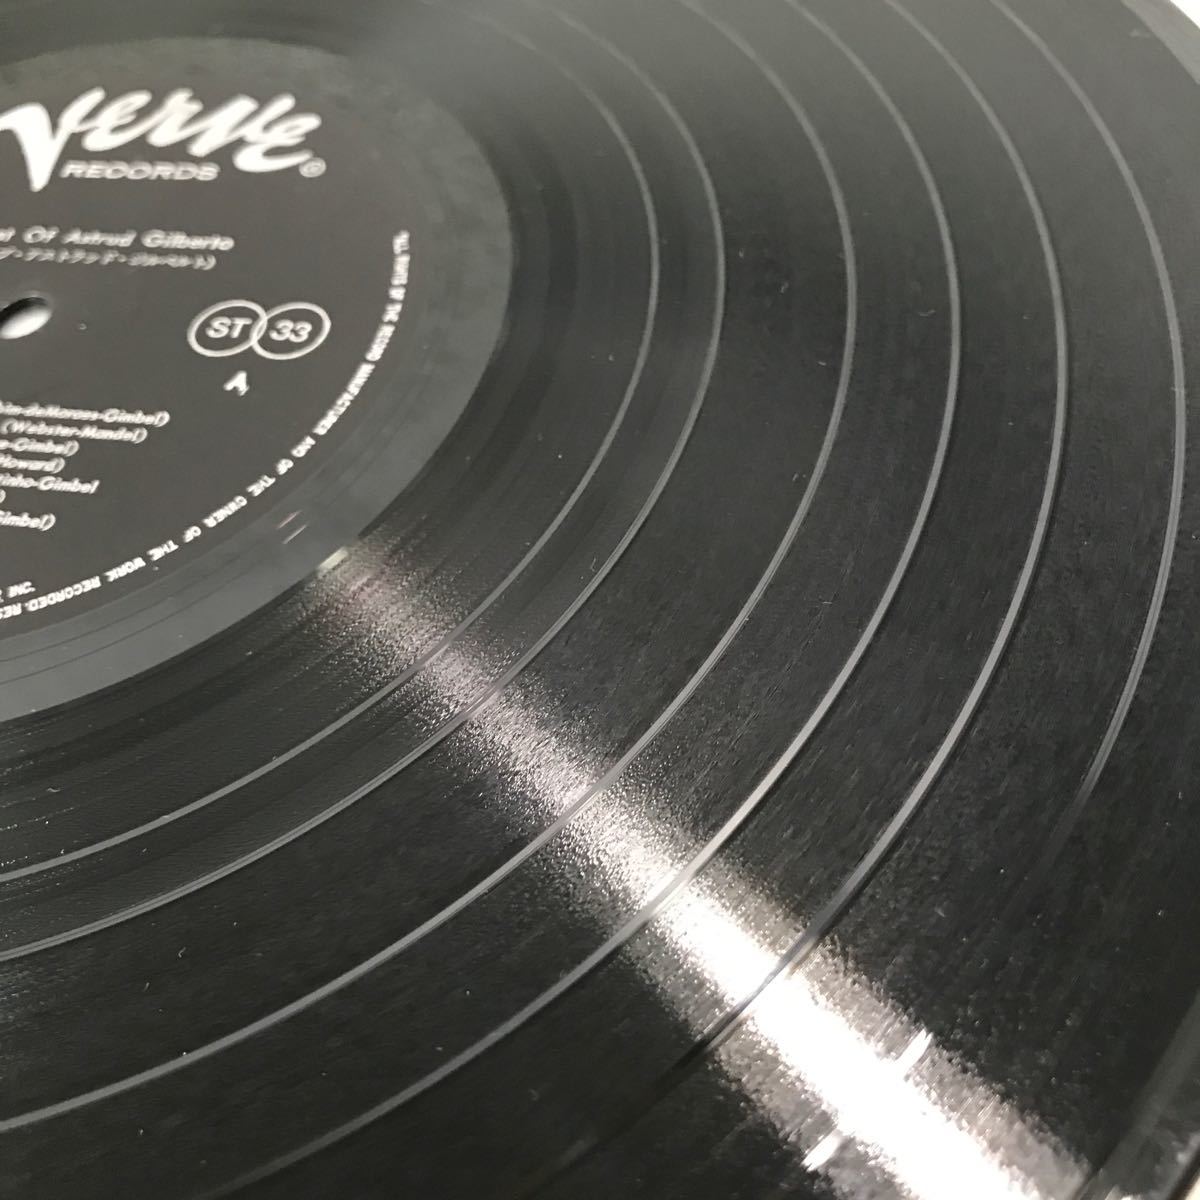 CB14▲ LP レコード The Best Of Astrud Gilberto ベストオブ・アスラッドジルベルト ボサノヴァ 美盤 ▲240305 の画像6